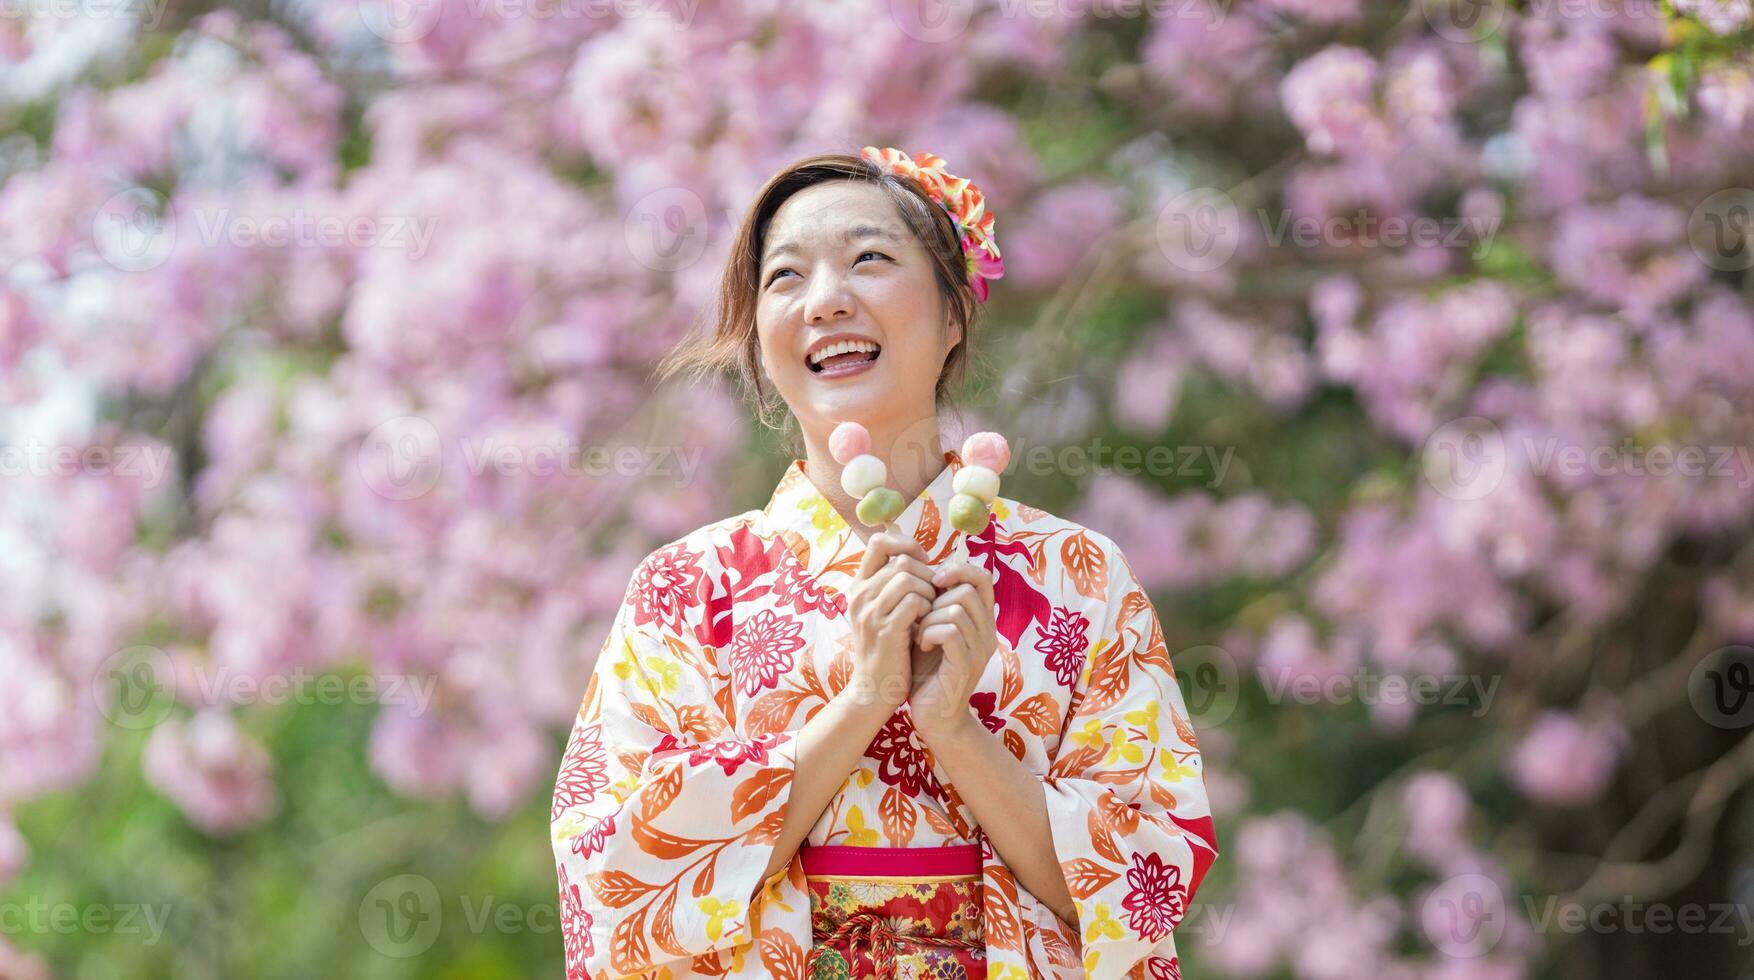 japansk kvinna i traditionell kimono klänning innehav ljuv hanami dango efterrätt medan gående i de parkera på körsbär blomma träd under vår sakura festival foto